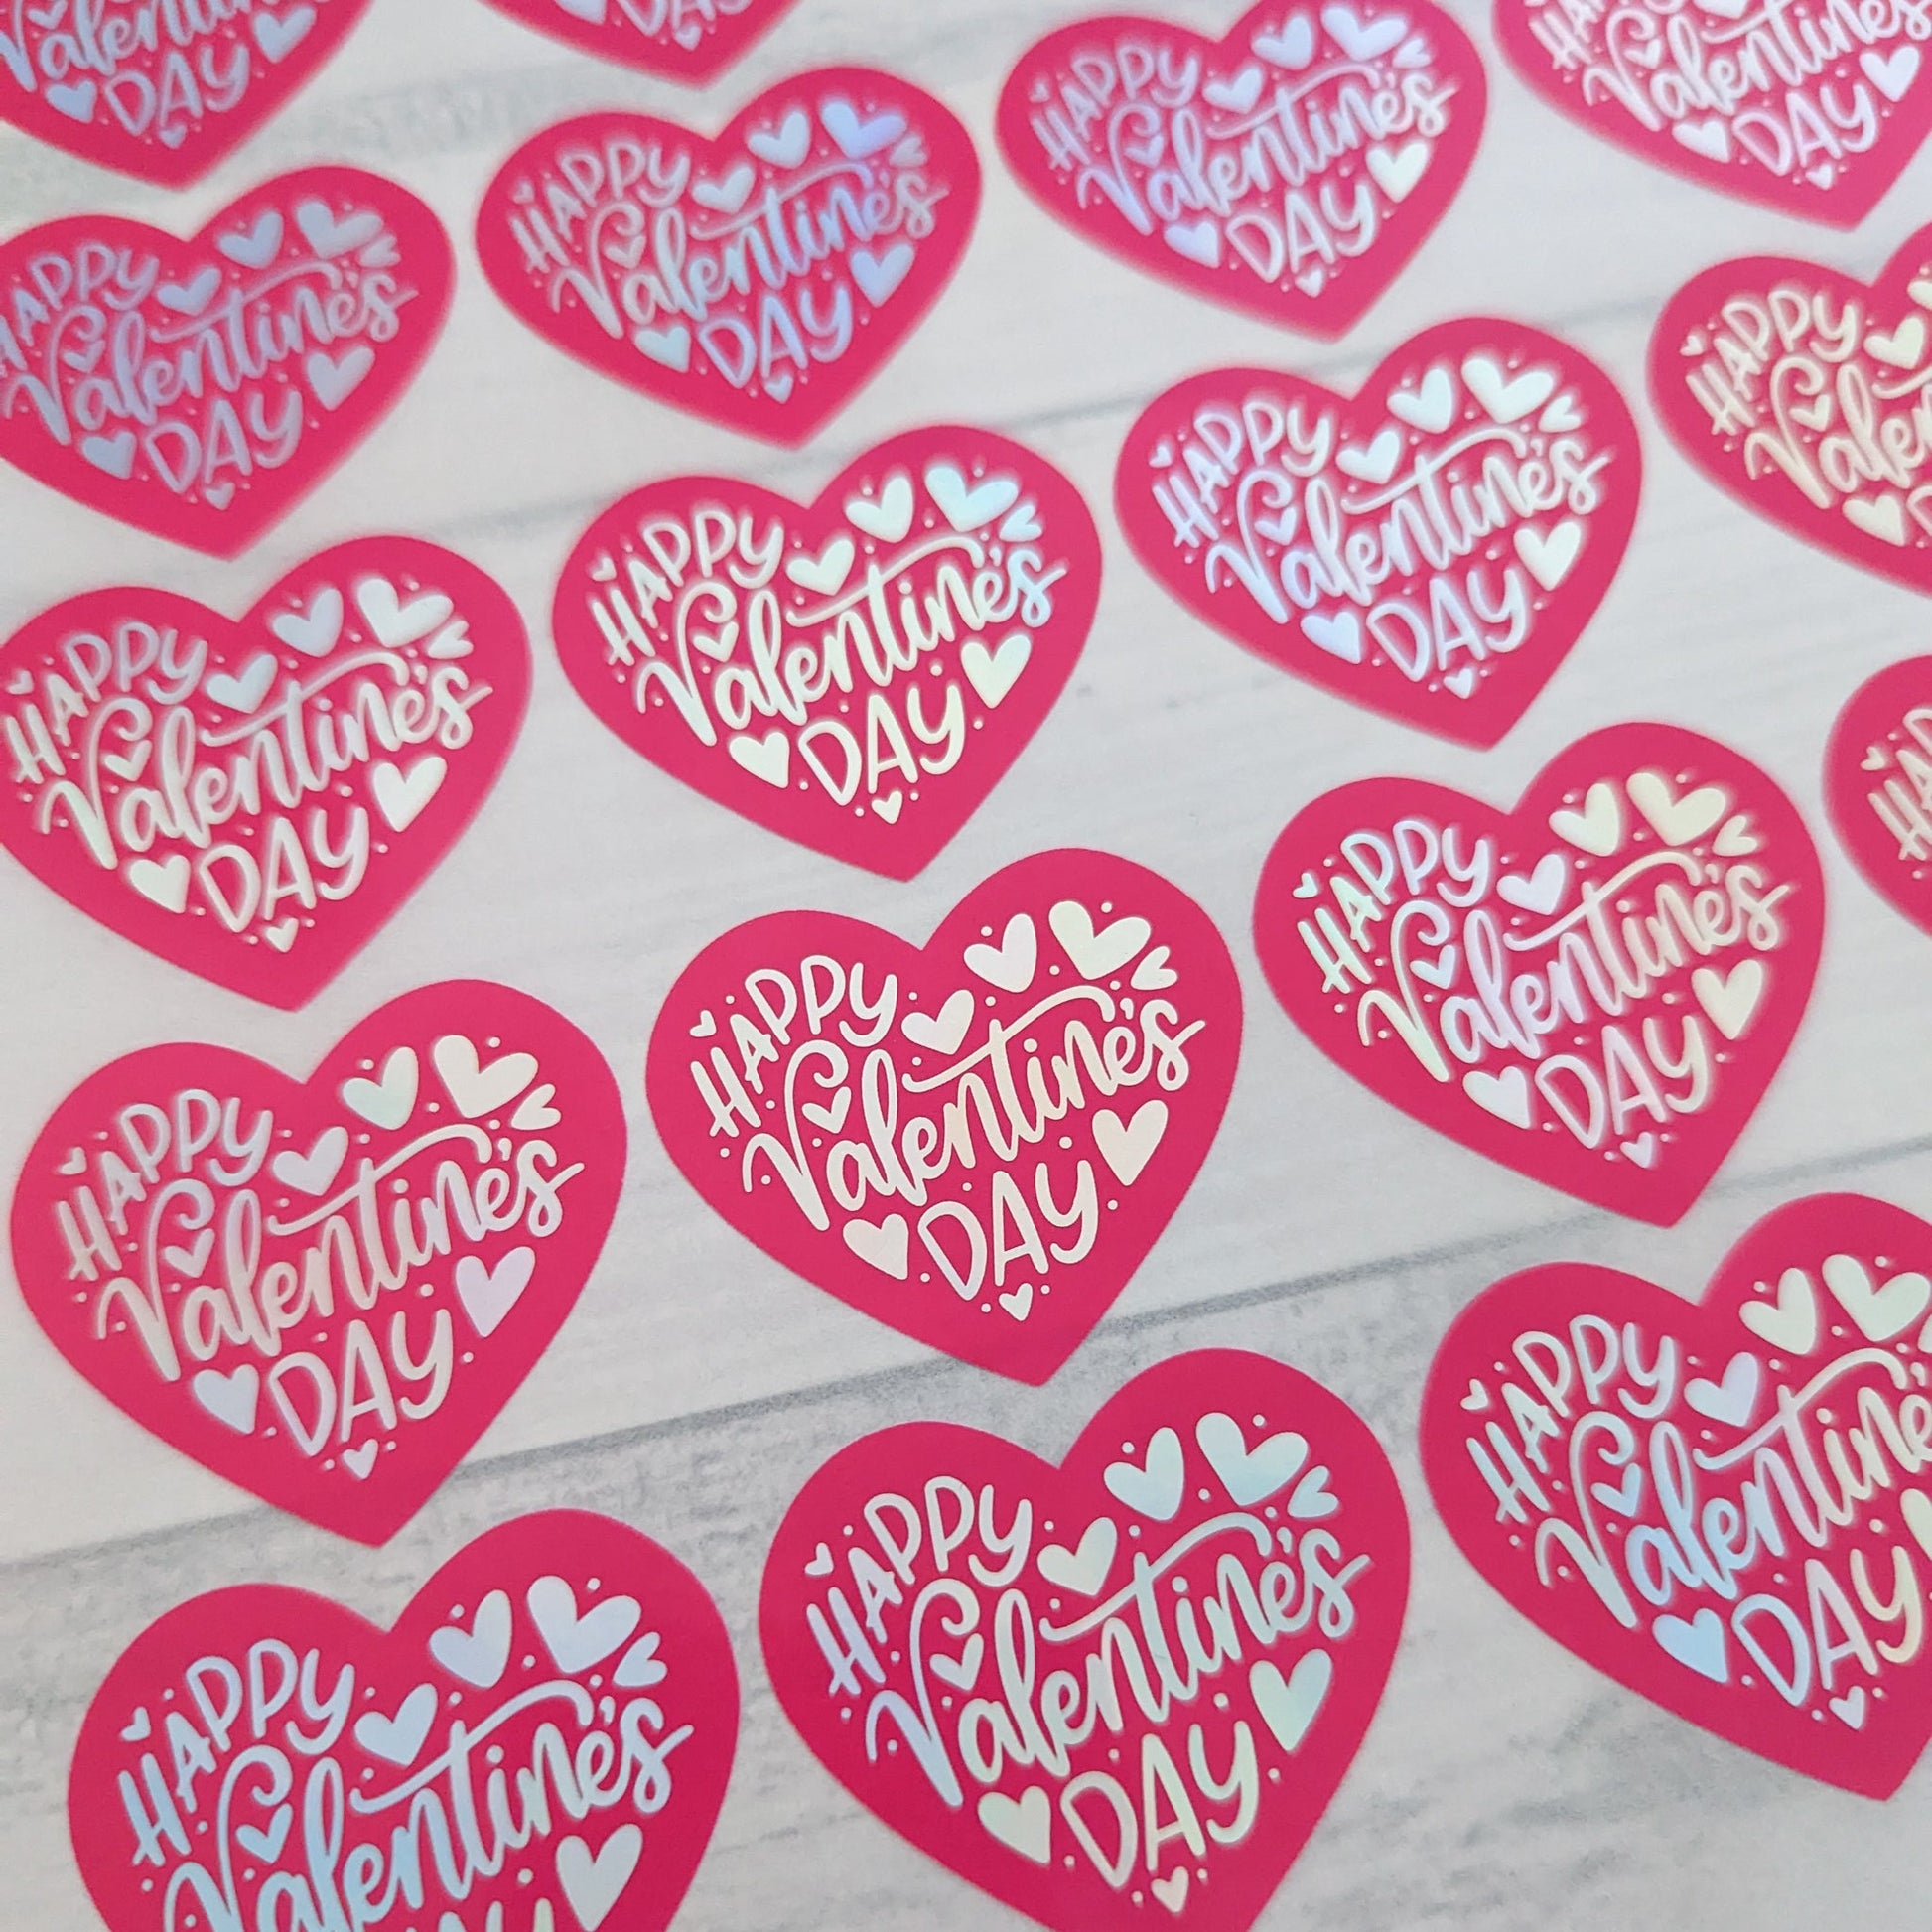 E&L Designs Heart Shaped Valentine's Day Stickers, Coloured